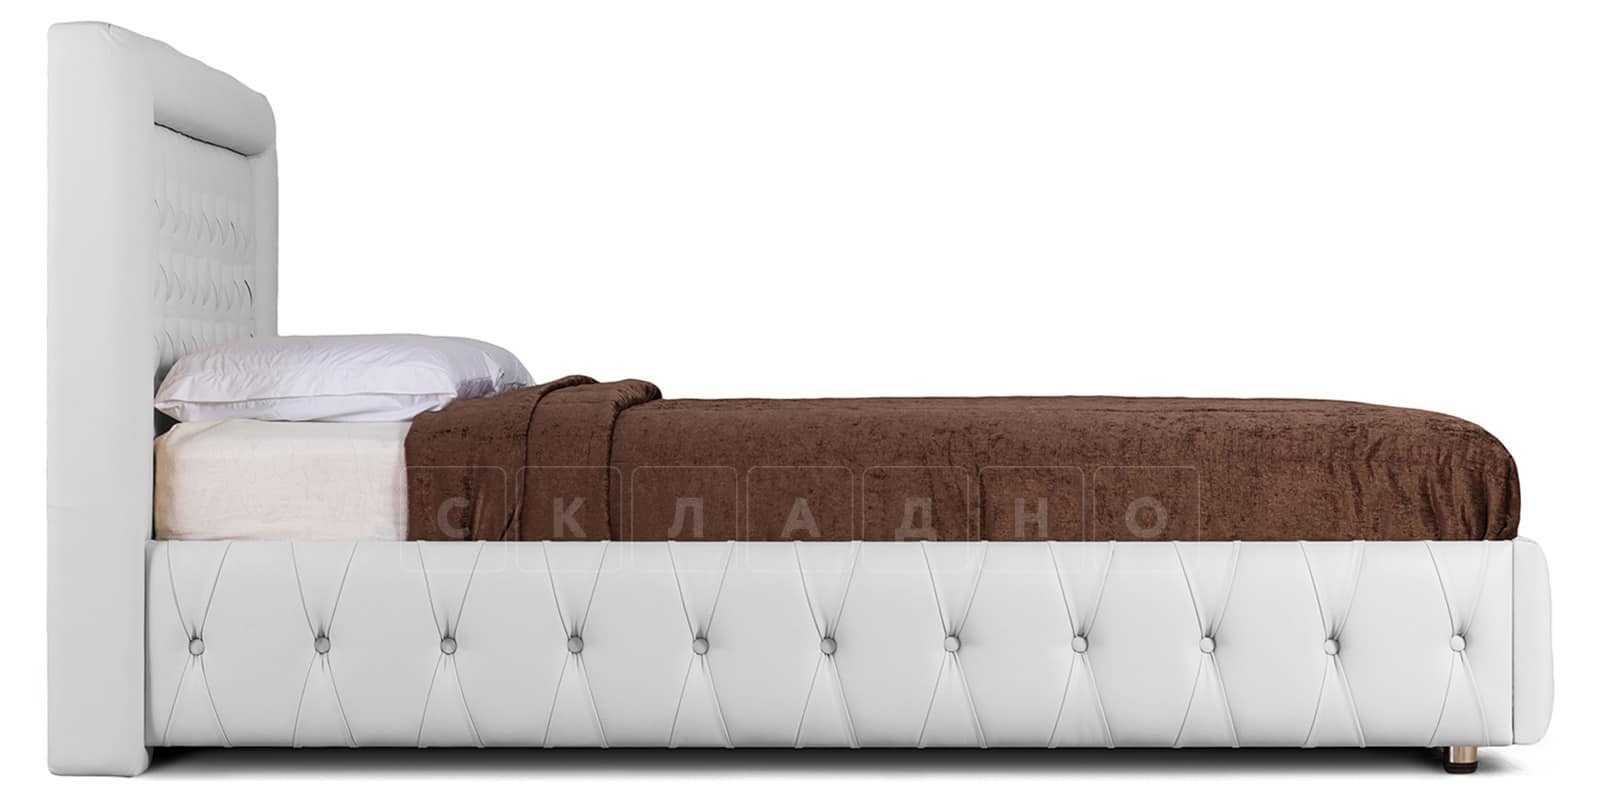 Мягкая кровать Малибу 160 см экокожа белого цвета вариант 7-2 фото 3 | интернет-магазин Складно